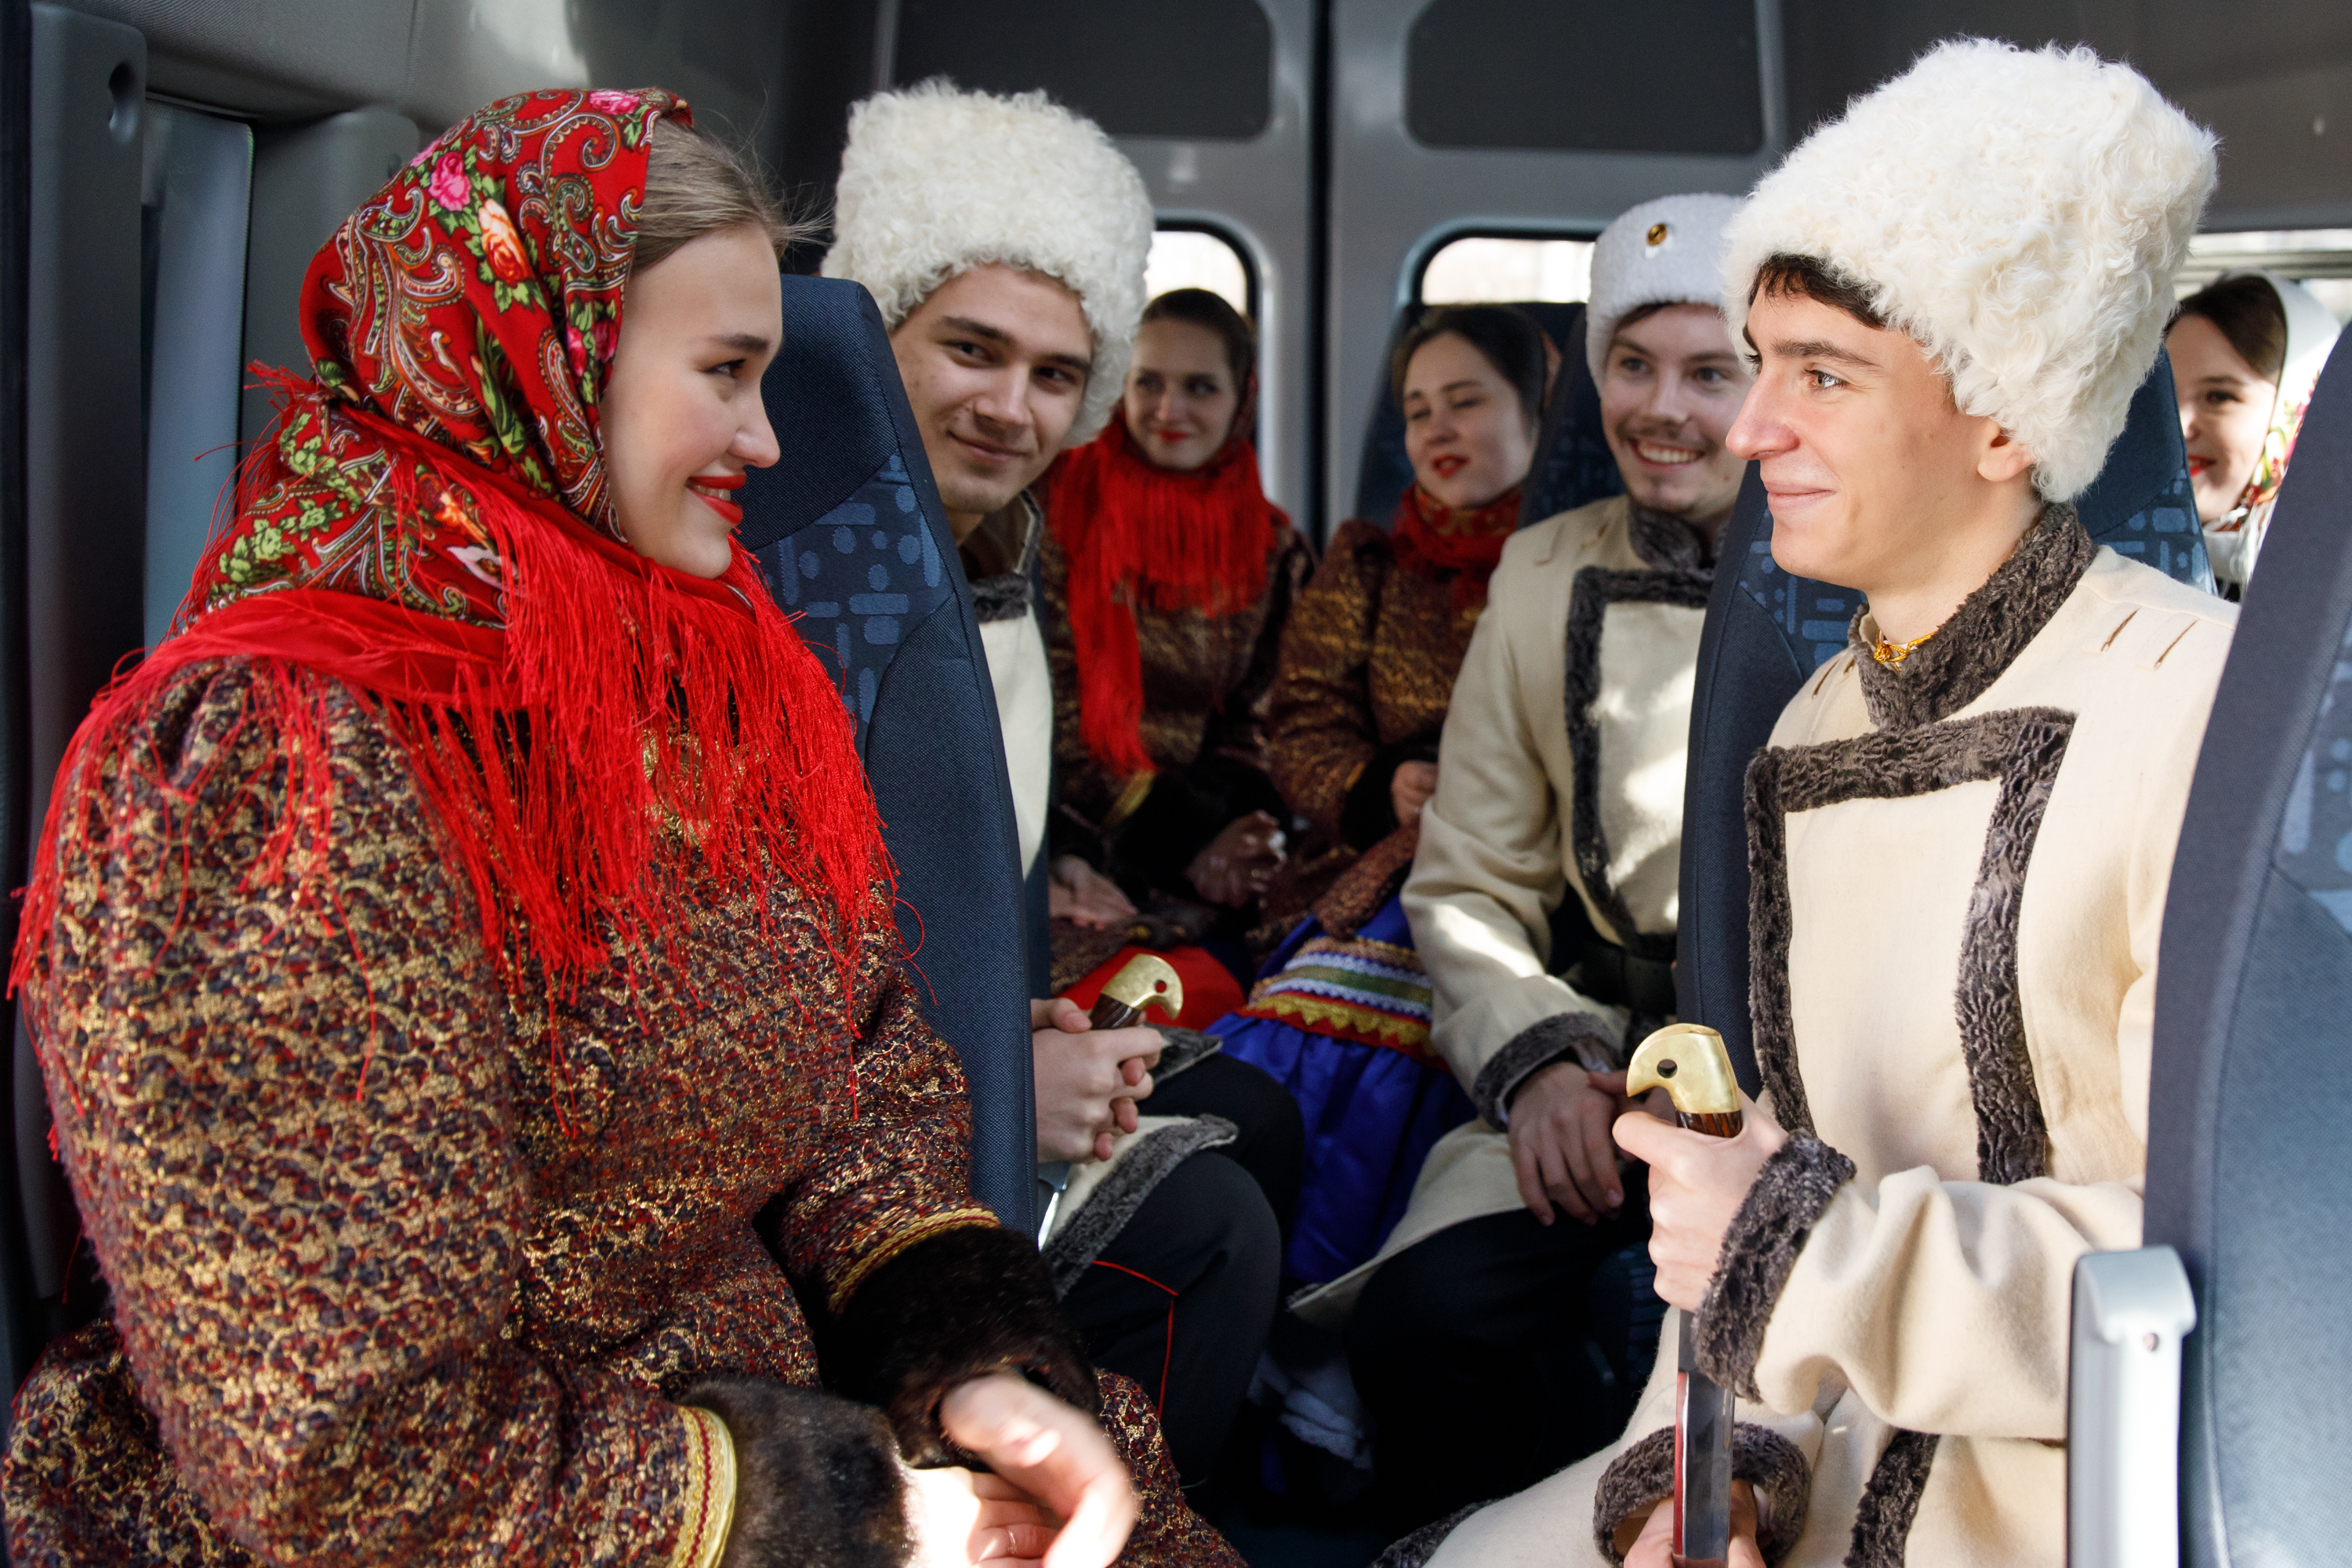 Фонд «Вольное Дело» подарил Краснодарскому институту культуры микроавтобус 